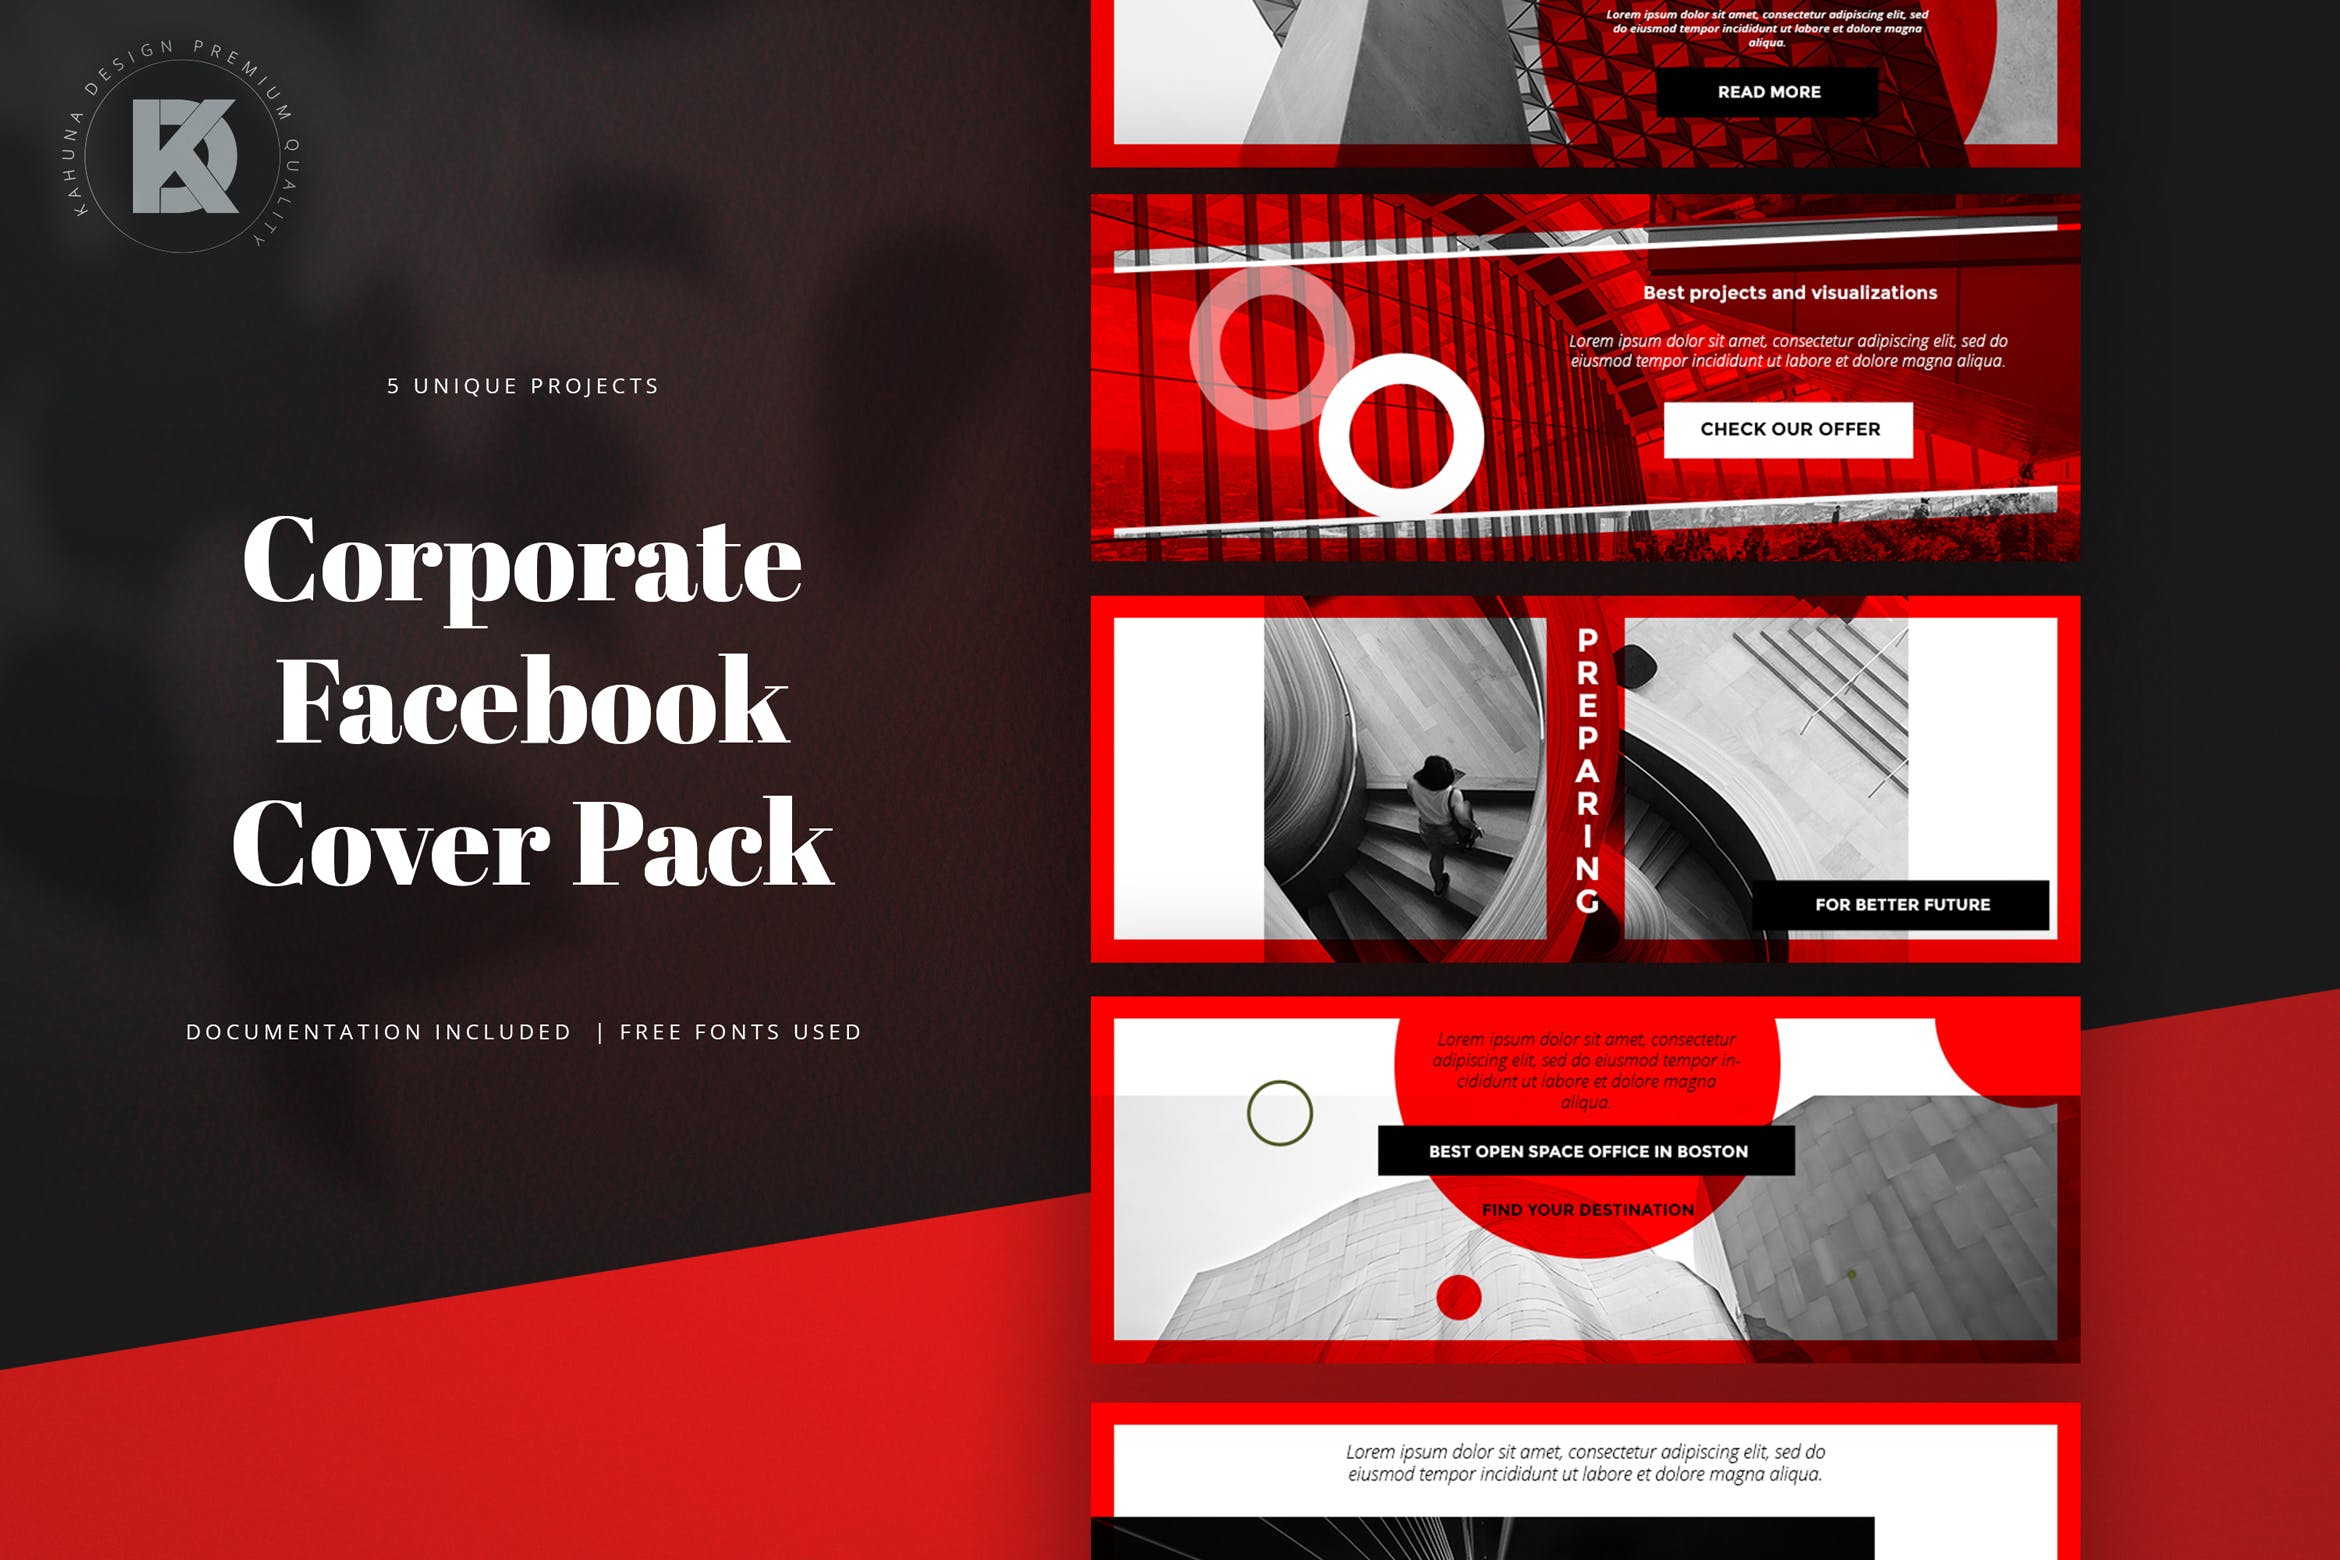 商务公司社交平台Facebook封面设计模板第一素材精选 Corporate Facebook Cover Pack插图